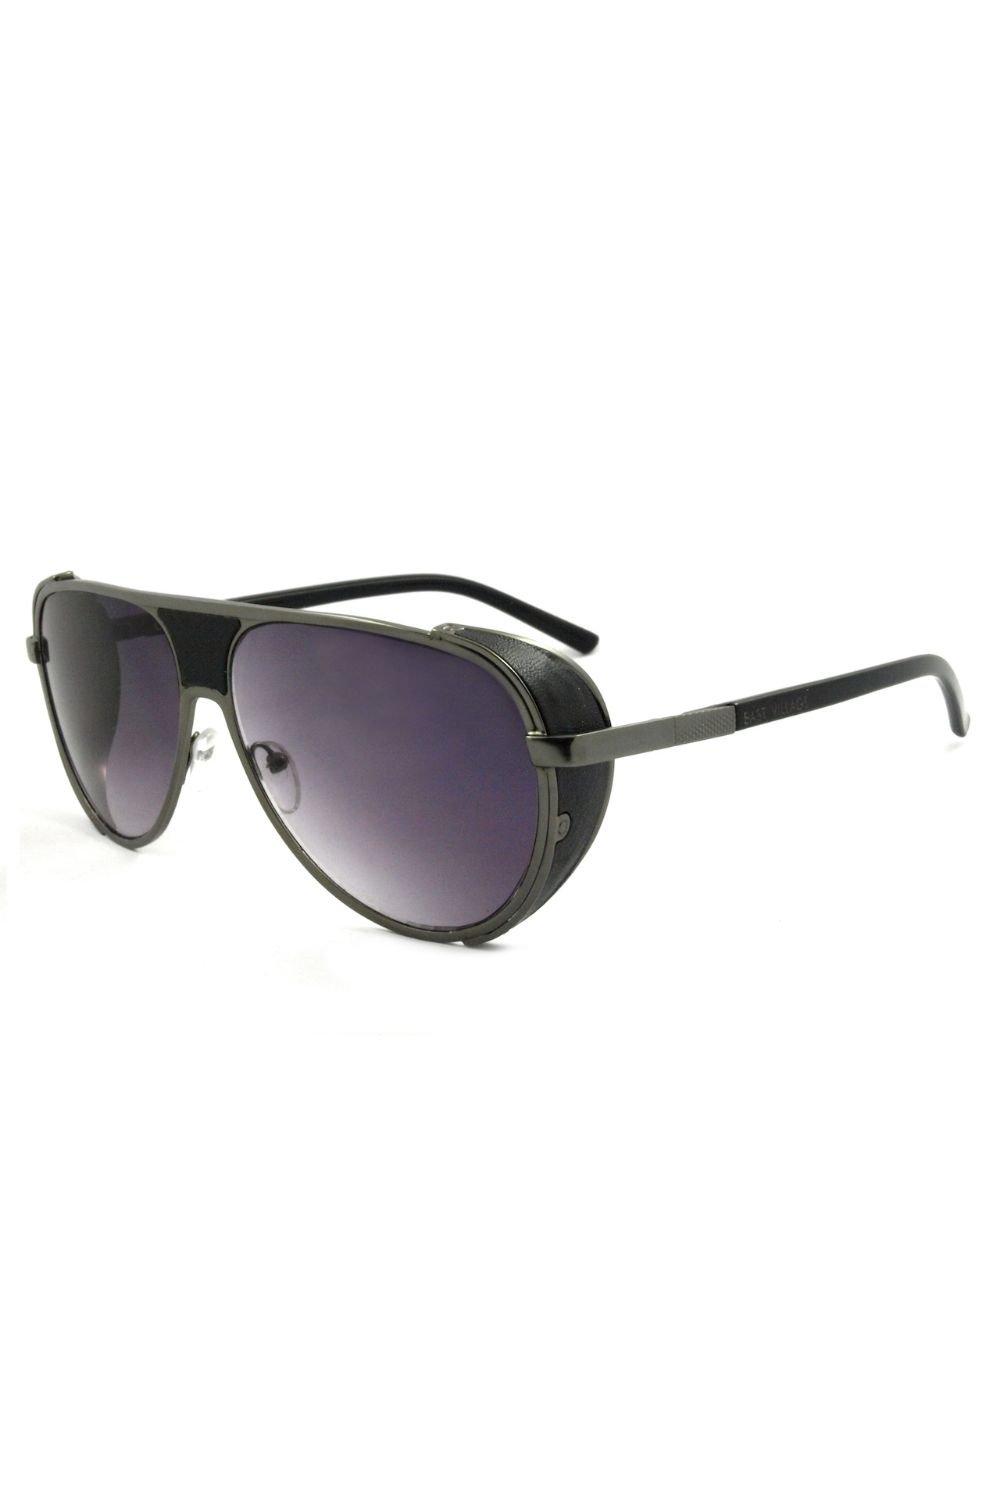 Солнцезащитные очки-авиаторы Jordan East Village, черный фильтр градиентный fujimi grad grey 55мм